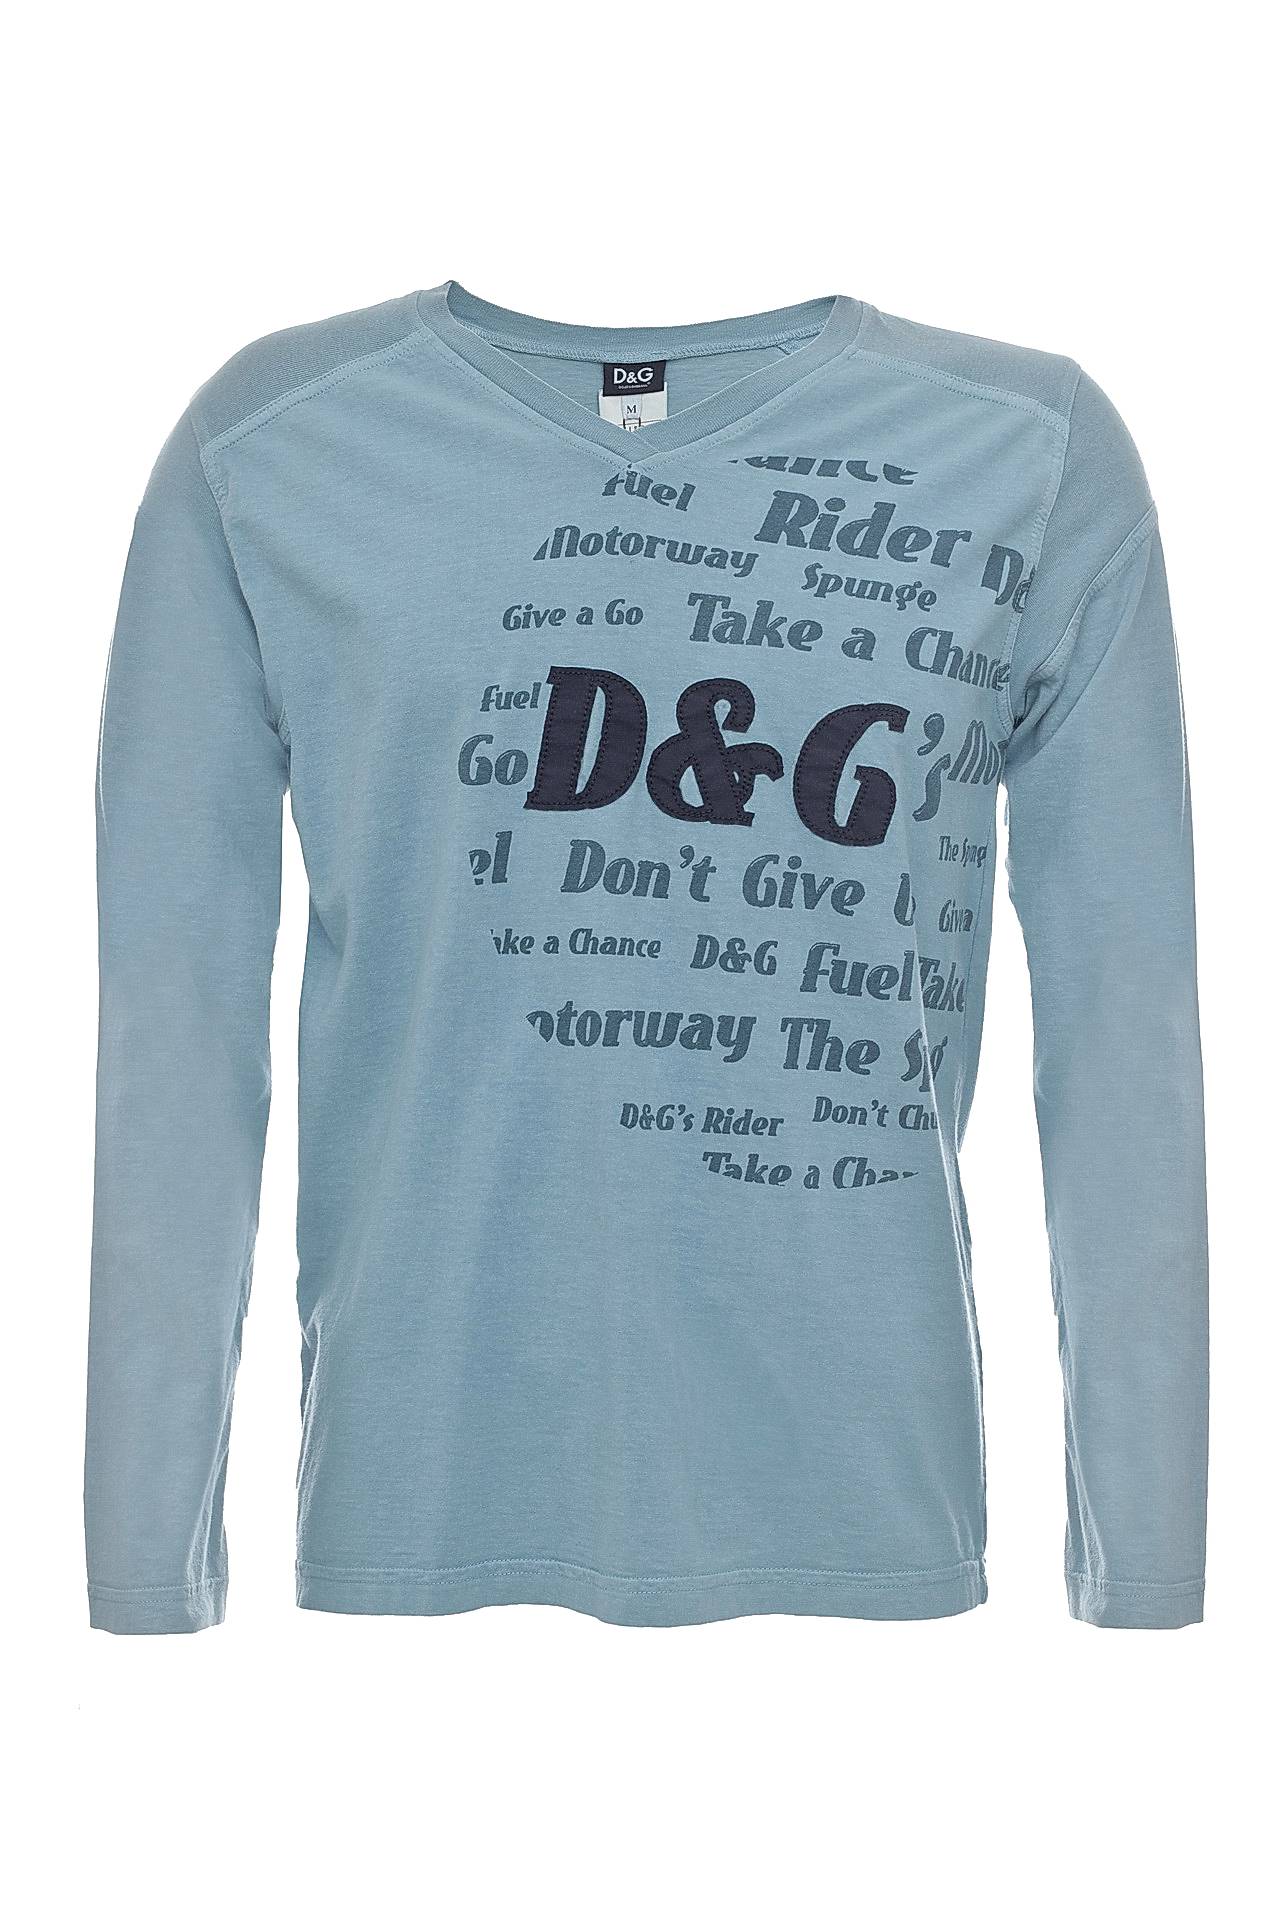 Одежда мужская Футболка D&G (IC271582027/00). Купить за 5400 руб.